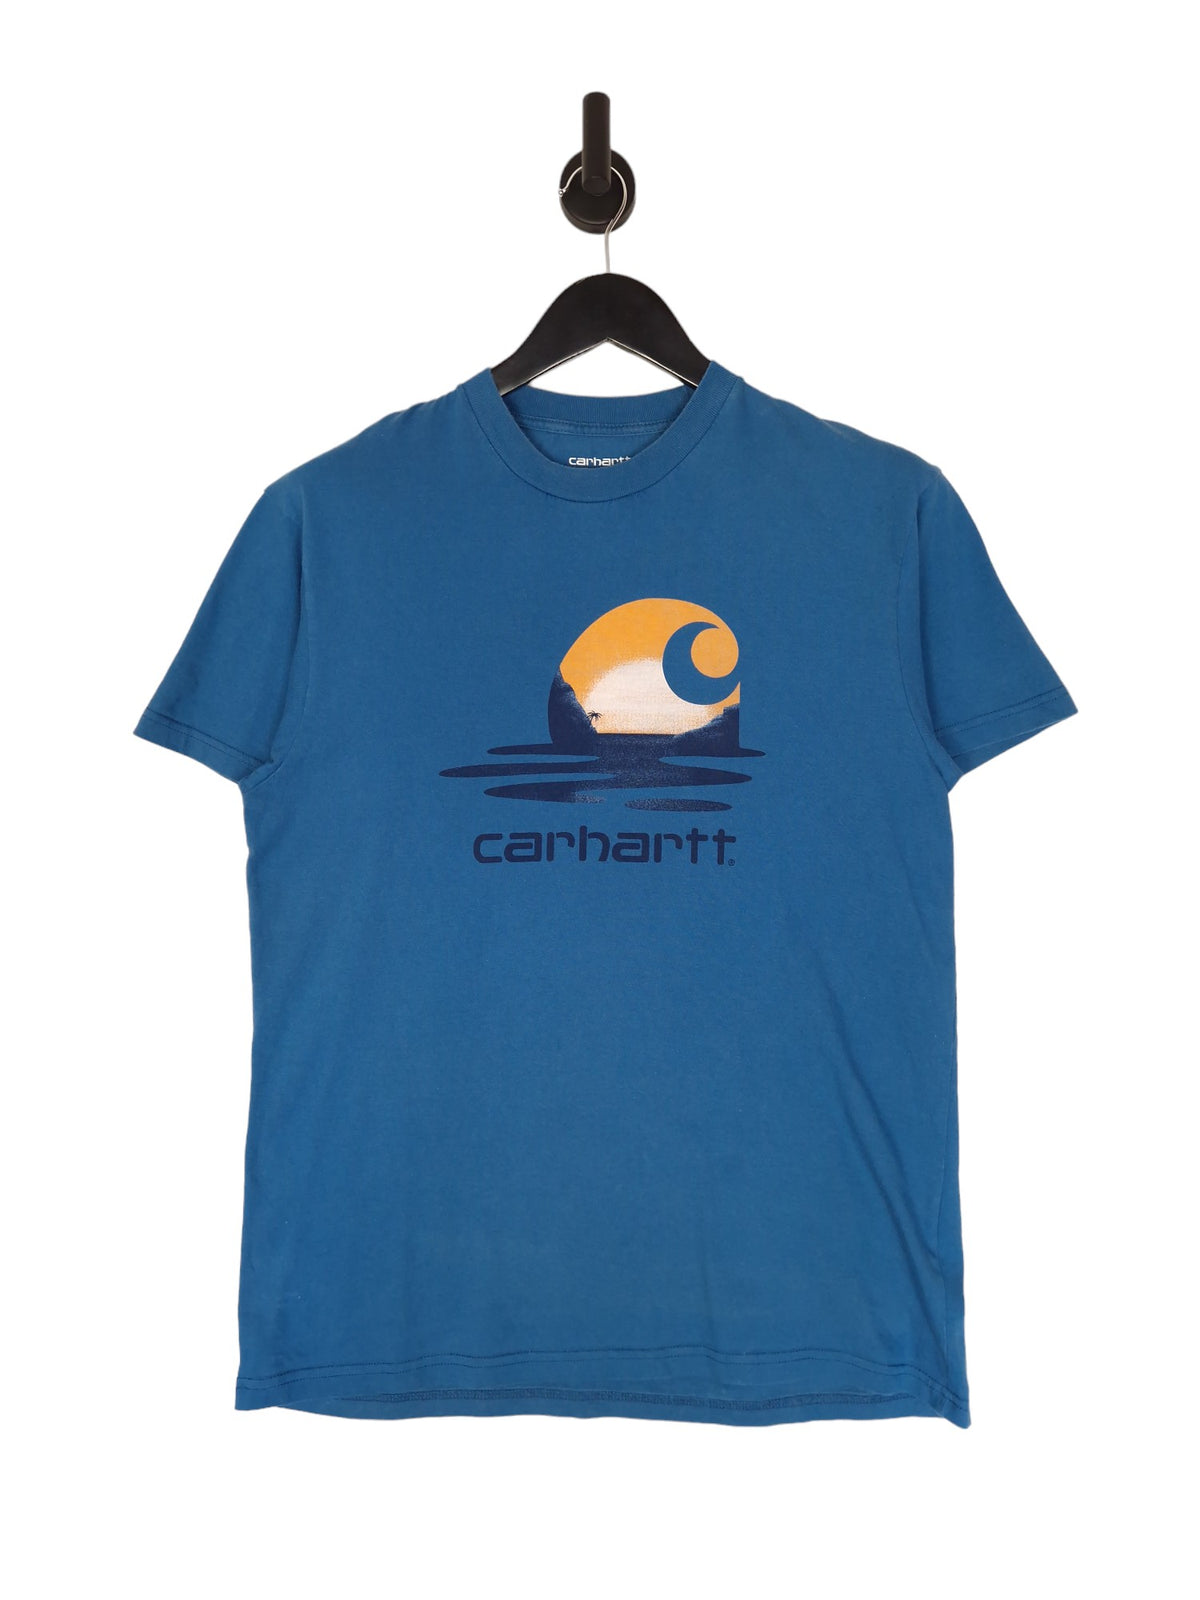 Carhartt W.I.P T-Shirt - Size Small